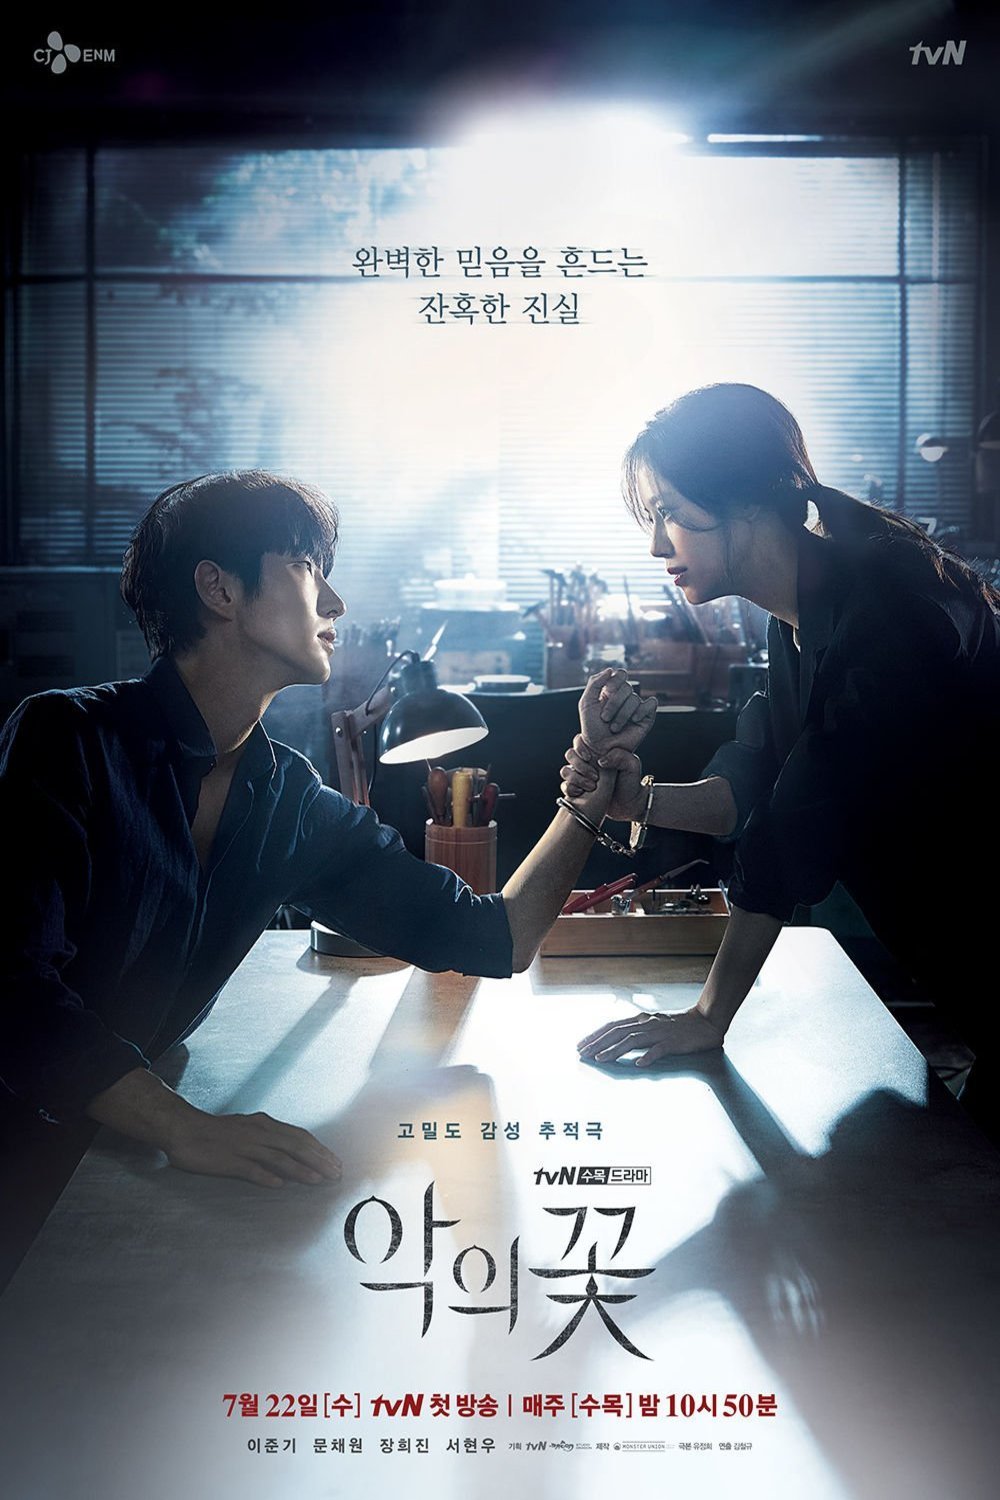 Korean poster of the movie Flower of Evil